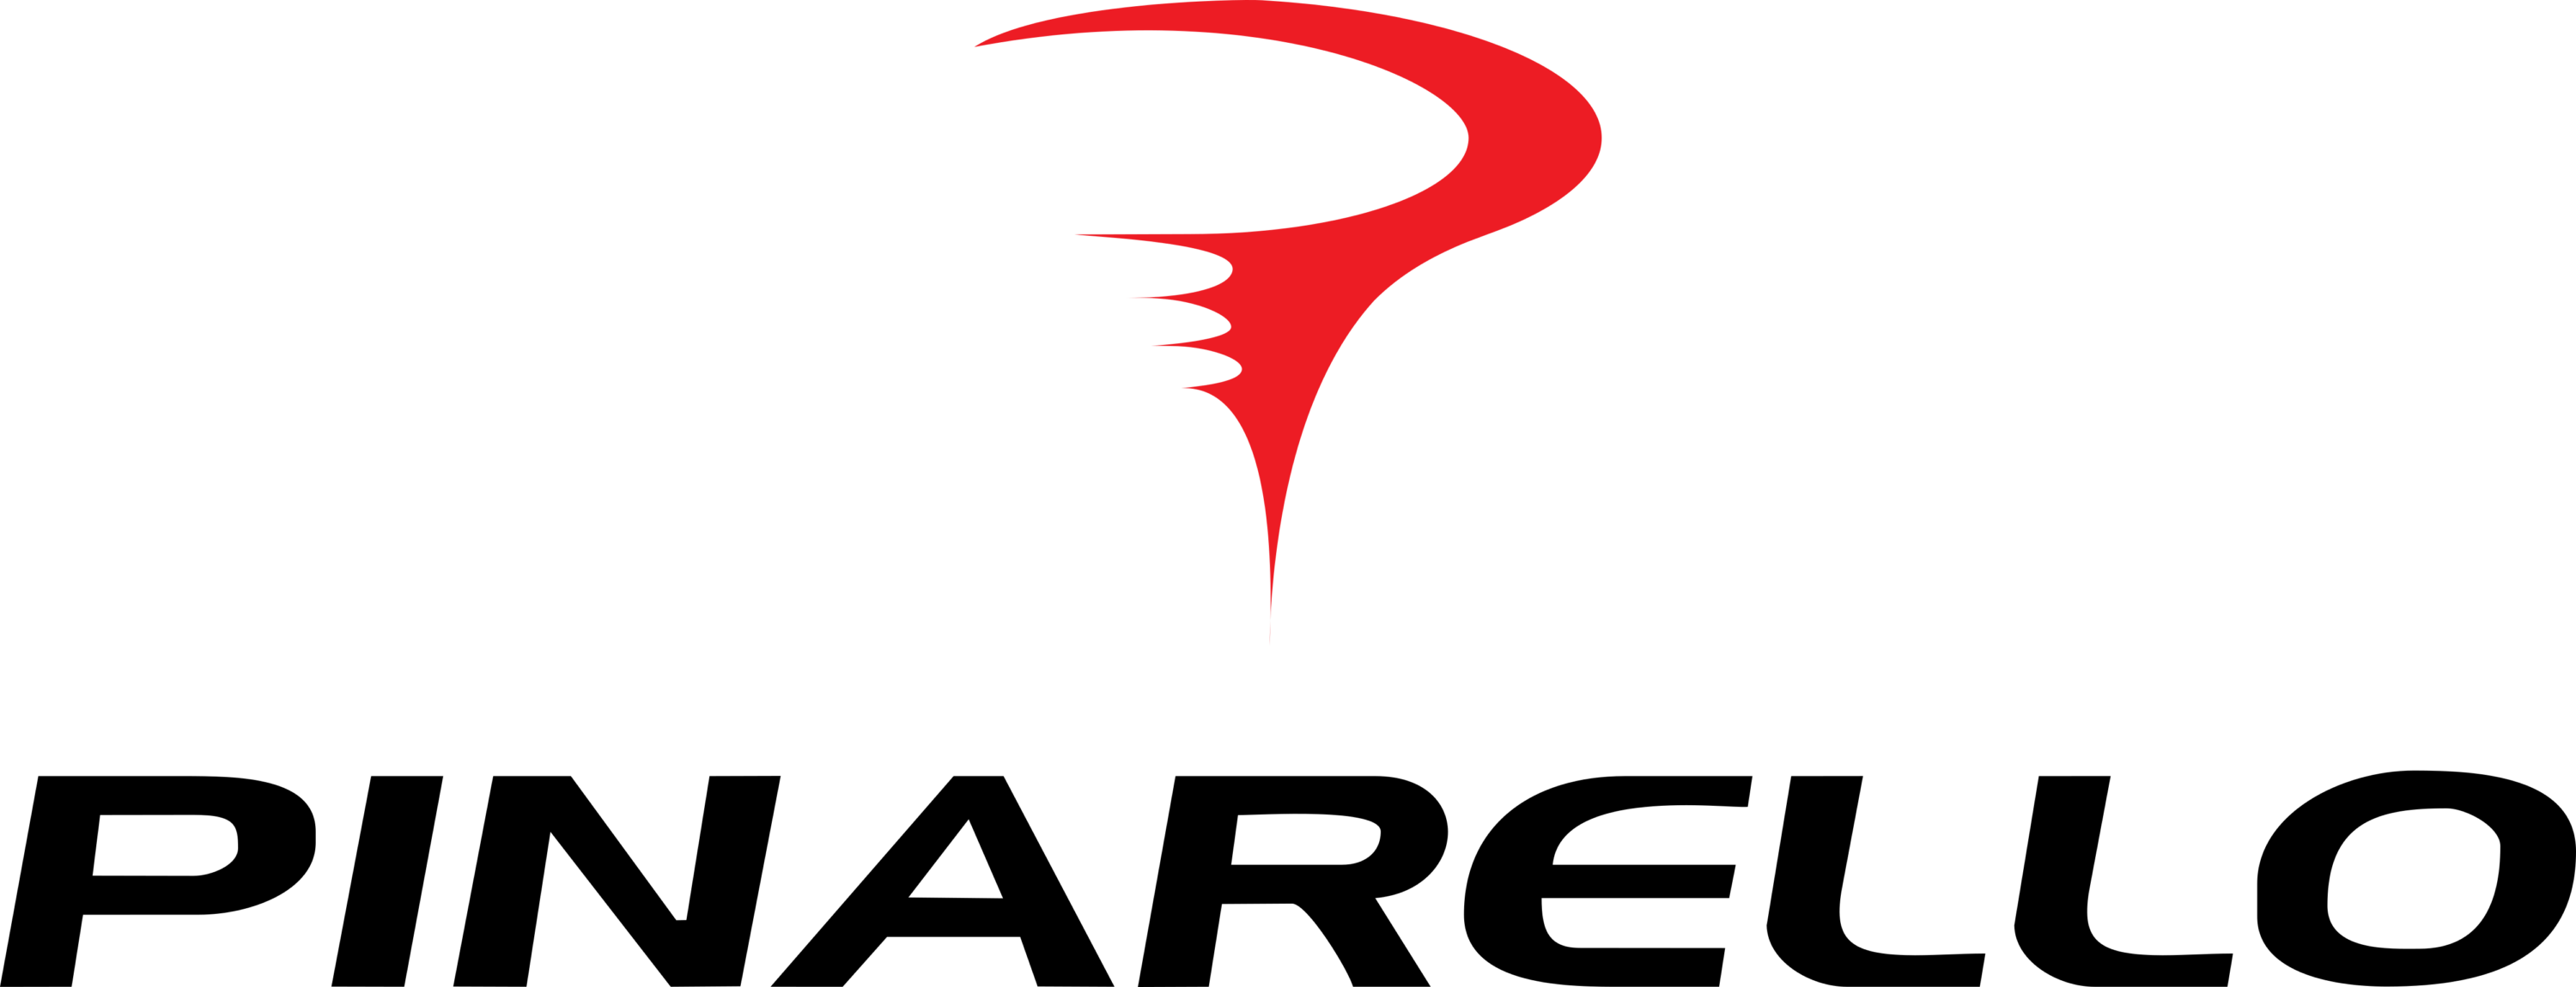 Pinarello Logo